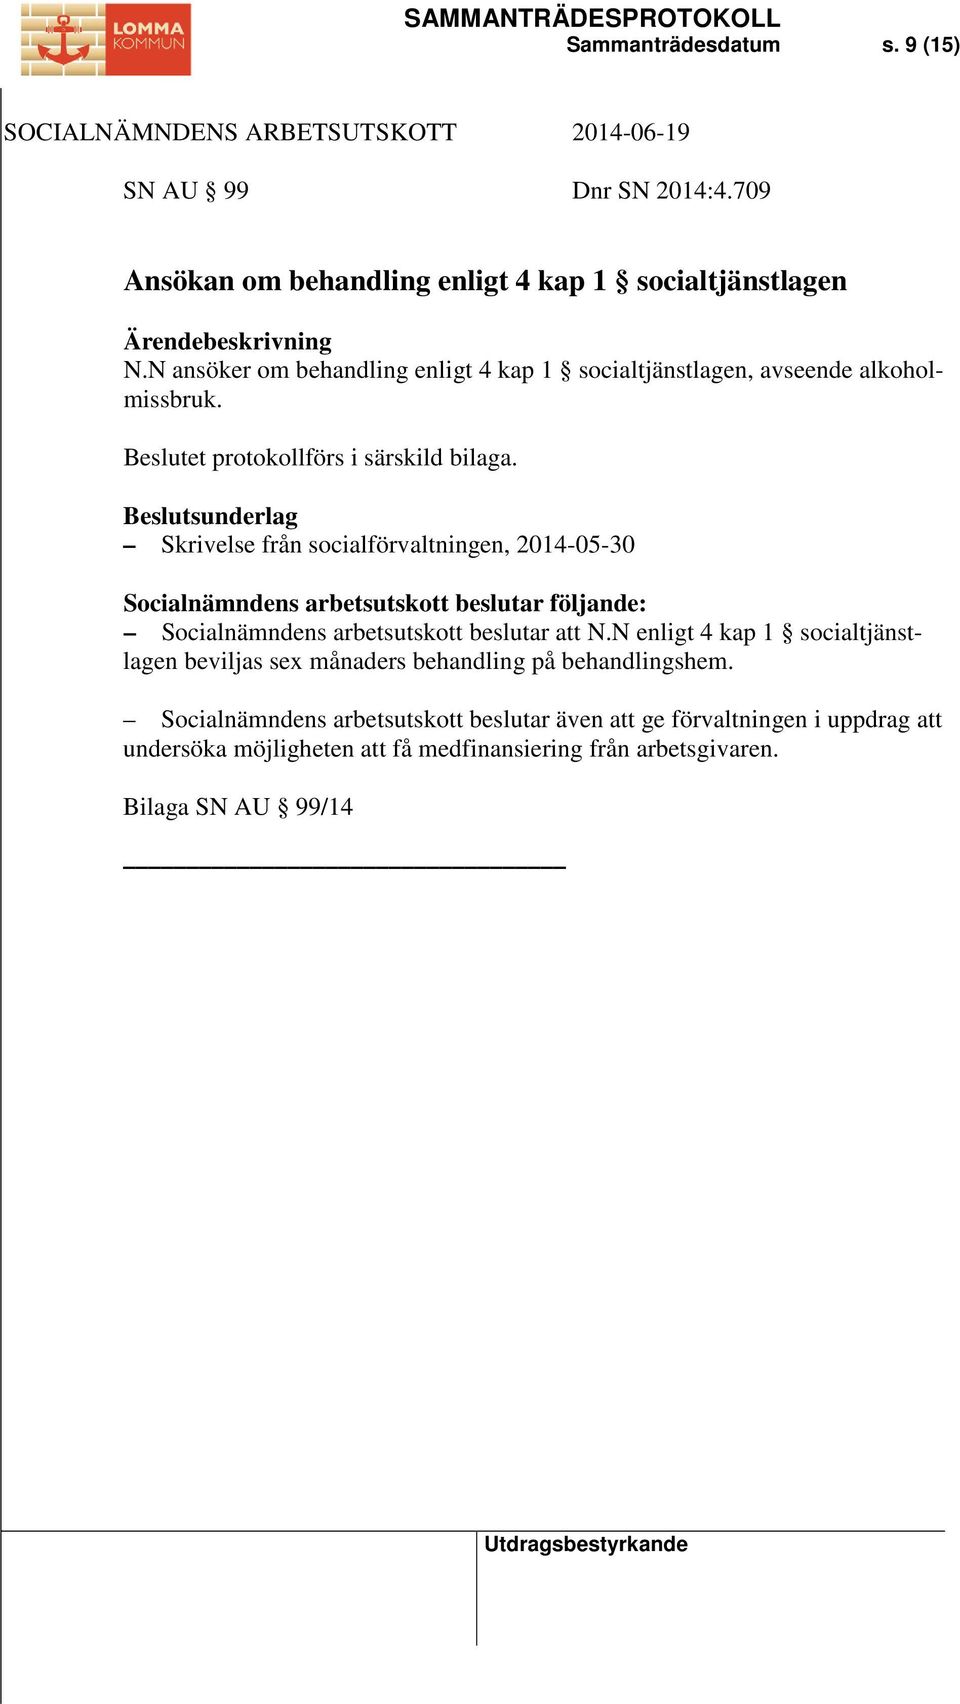 Skrivelse från socialförvaltningen, 2014-05-30 Socialnämndens arbetsutskott beslutar att N.